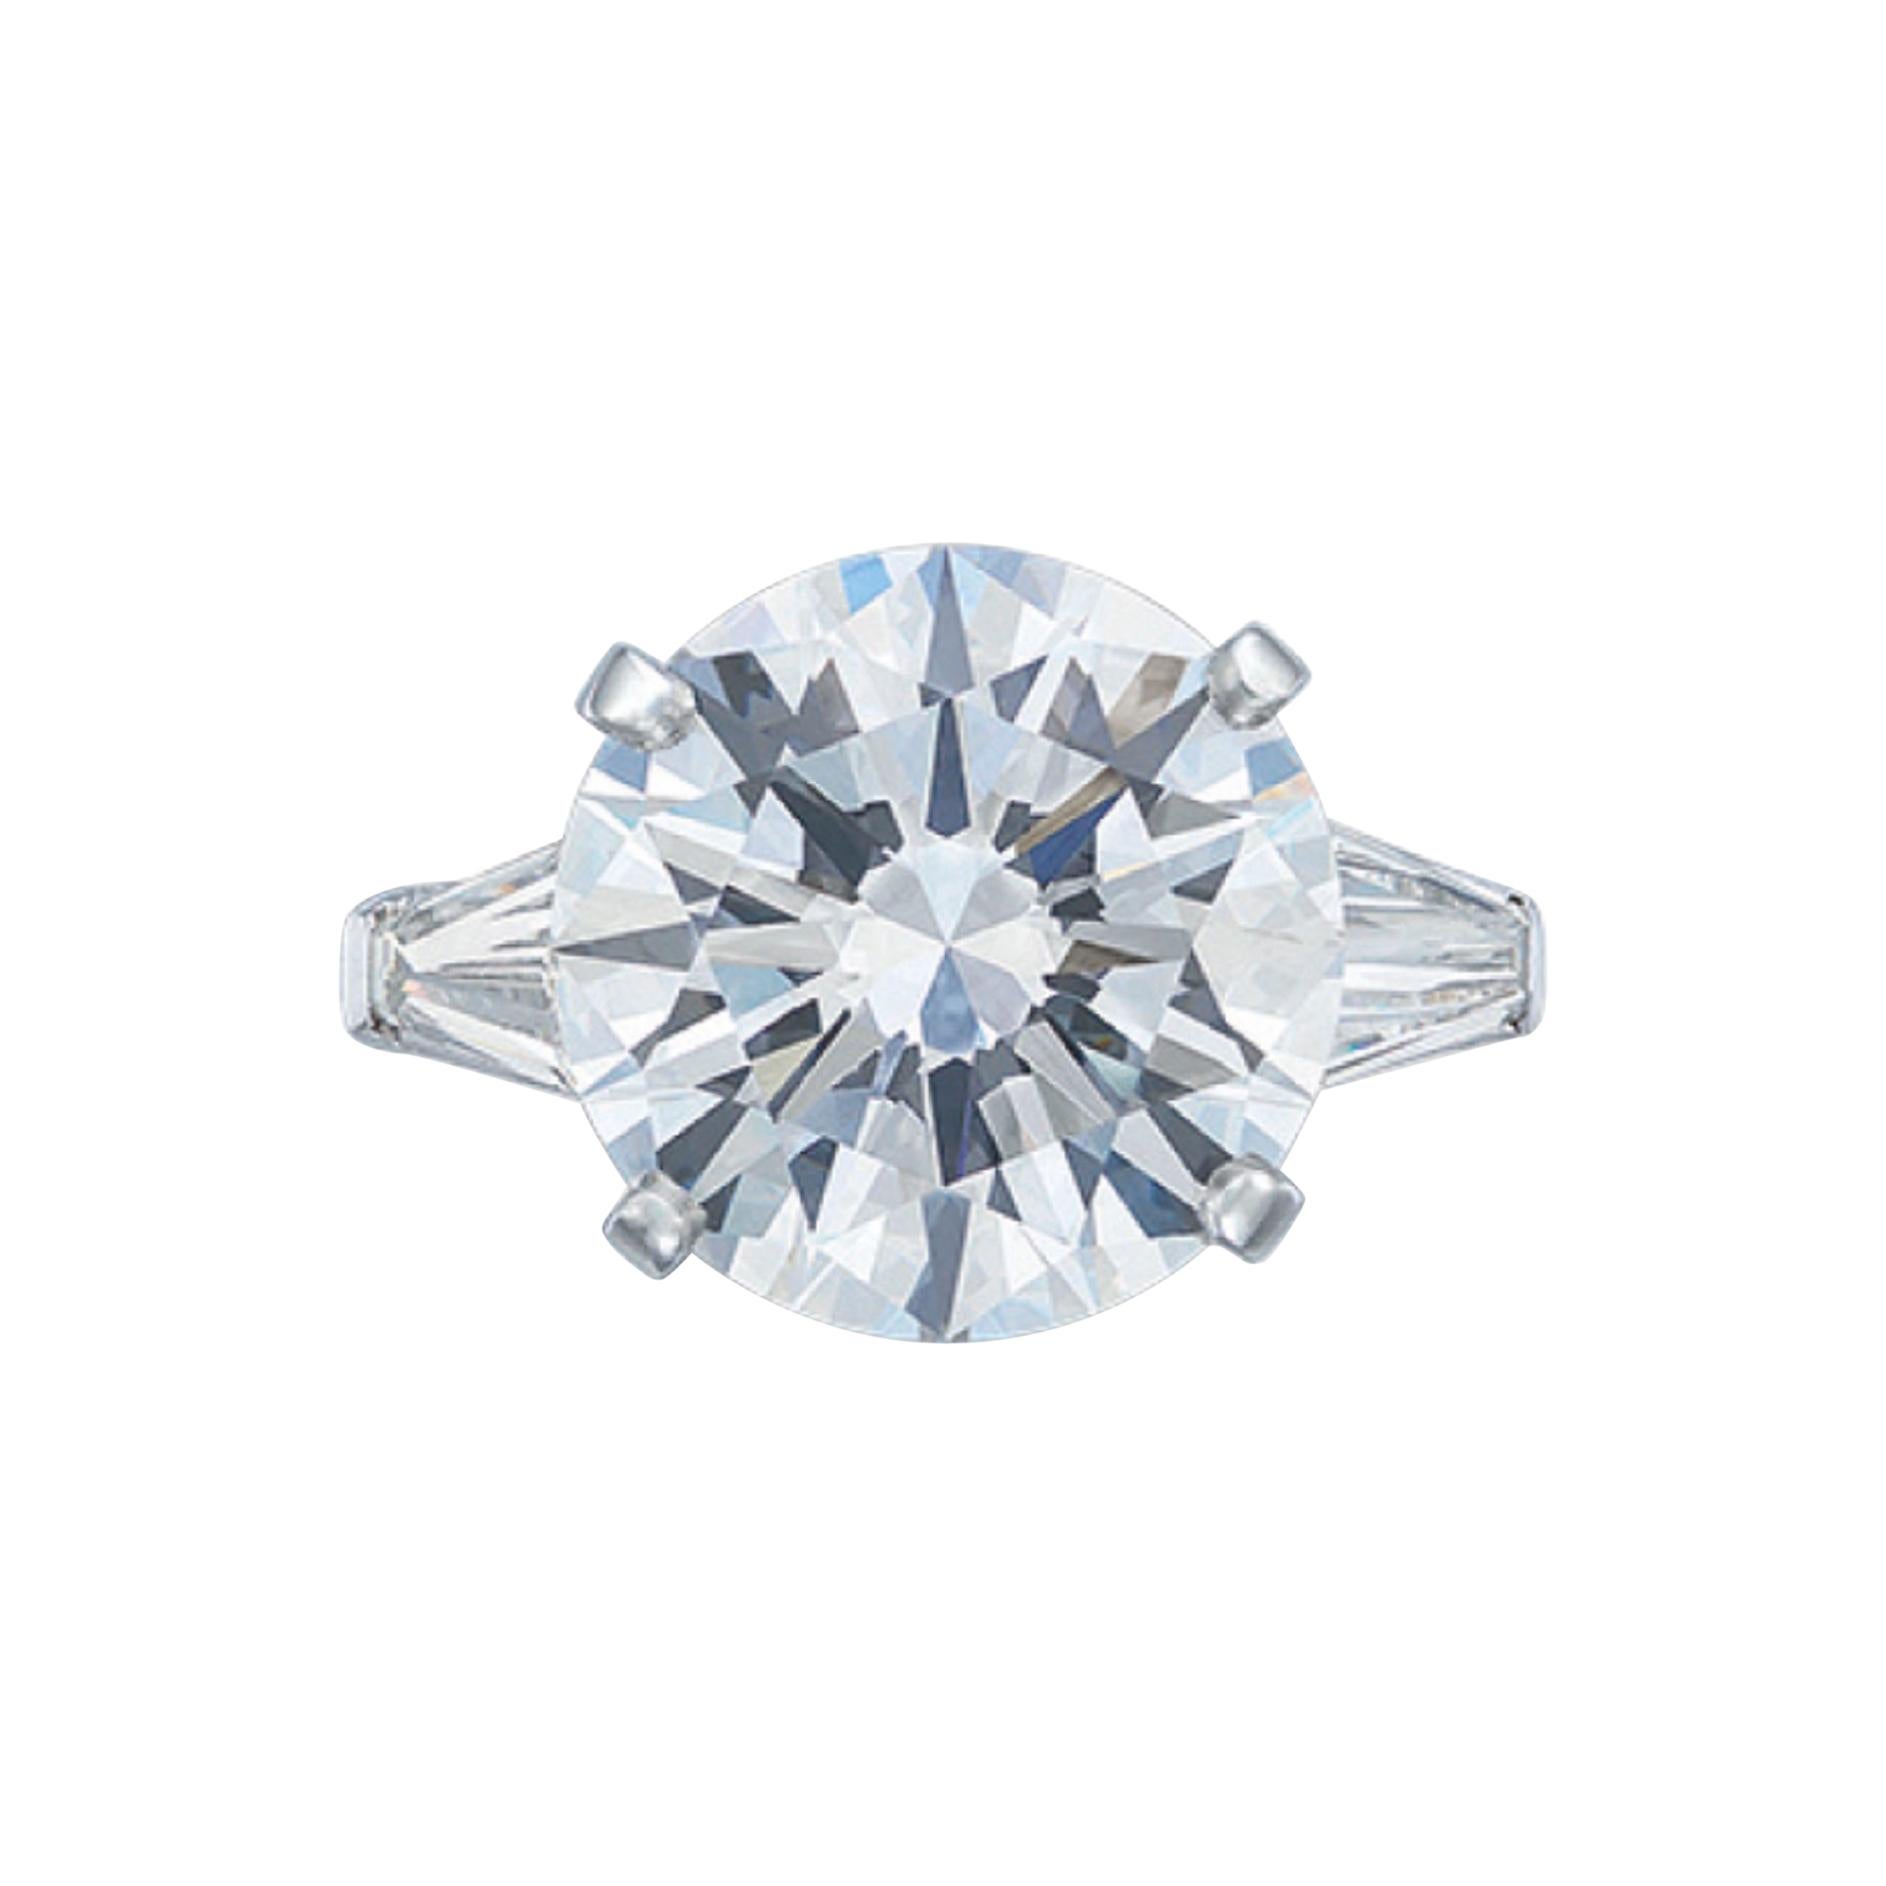 IGI Certified 2.54 Carat Round Brilliant Cut Diamond Platinum Ring